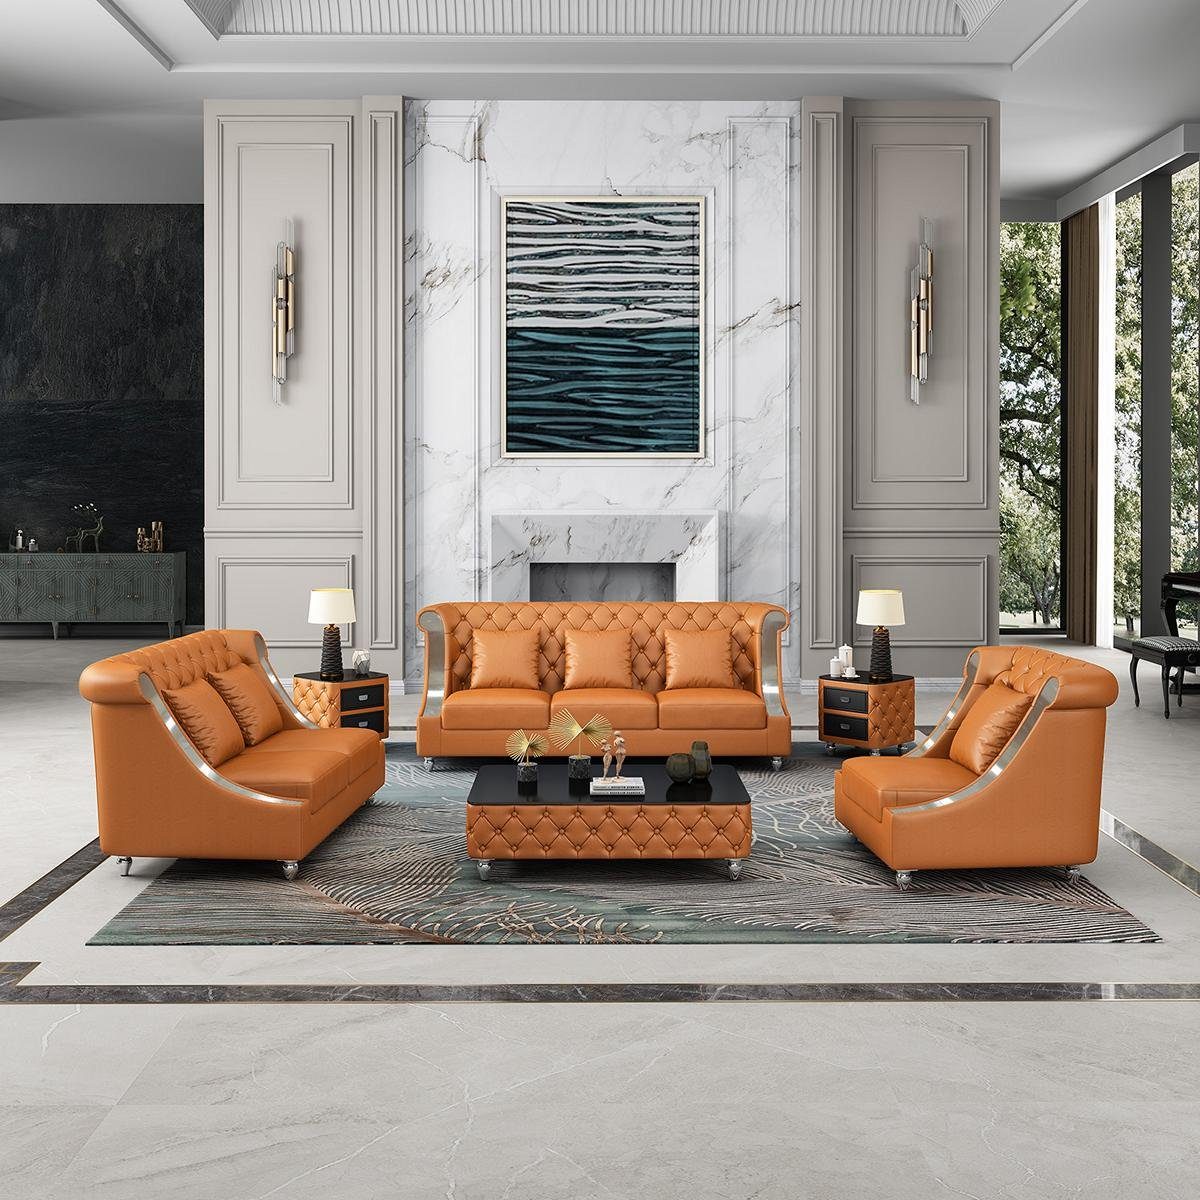 JVmoebel Wohnzimmer-Set, Sofagarnitur 3 2 1 Sitzer Set Design Sofa Polster Couchen Couch Modern Orange